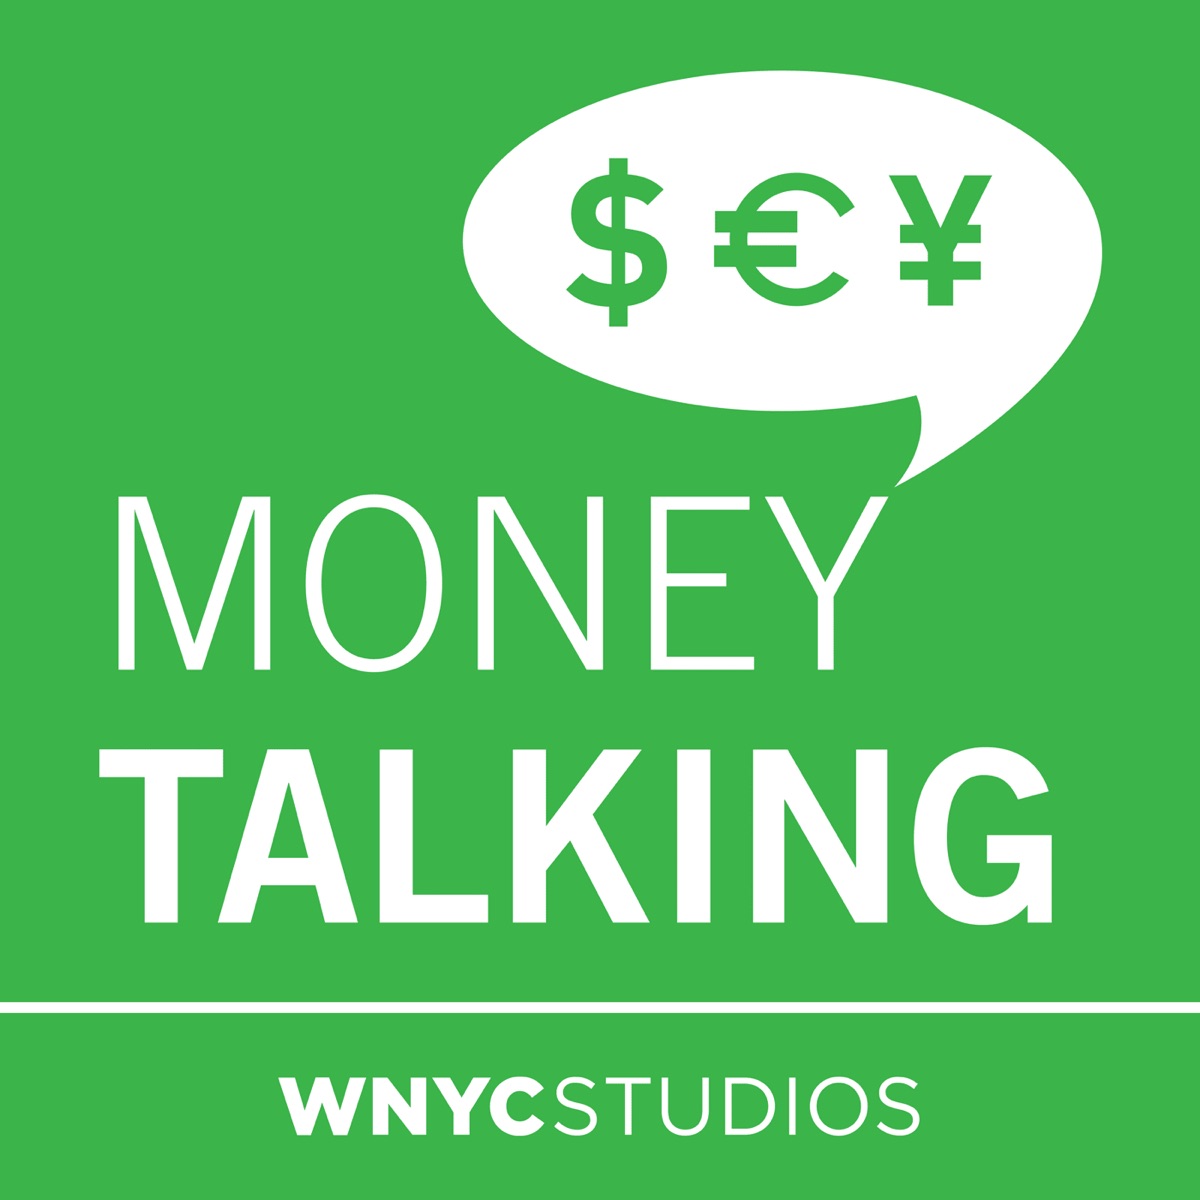 Talking money 2. Money talking. Money talks.